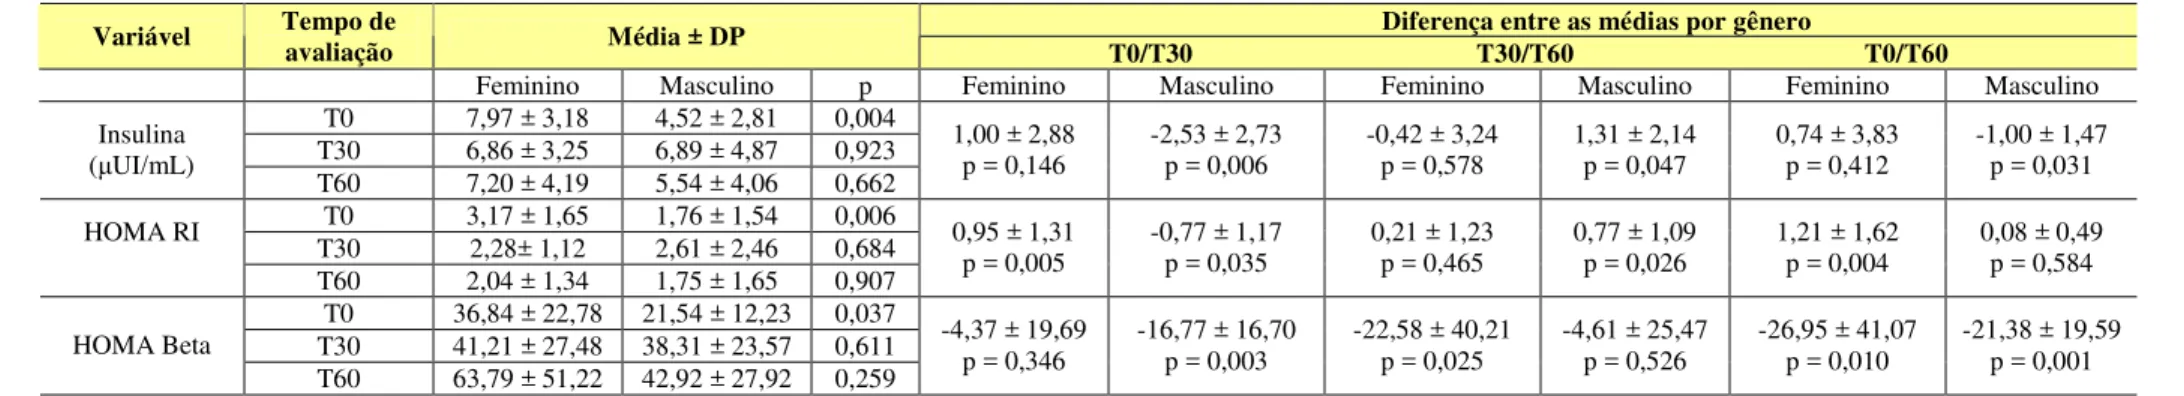 Tabela 7 - Valores médios, DP, diferença dos valores médios basais e aos 30 e 60 dias das variáveis insulina, HOMA RI e HOMA Beta por                                 gênero